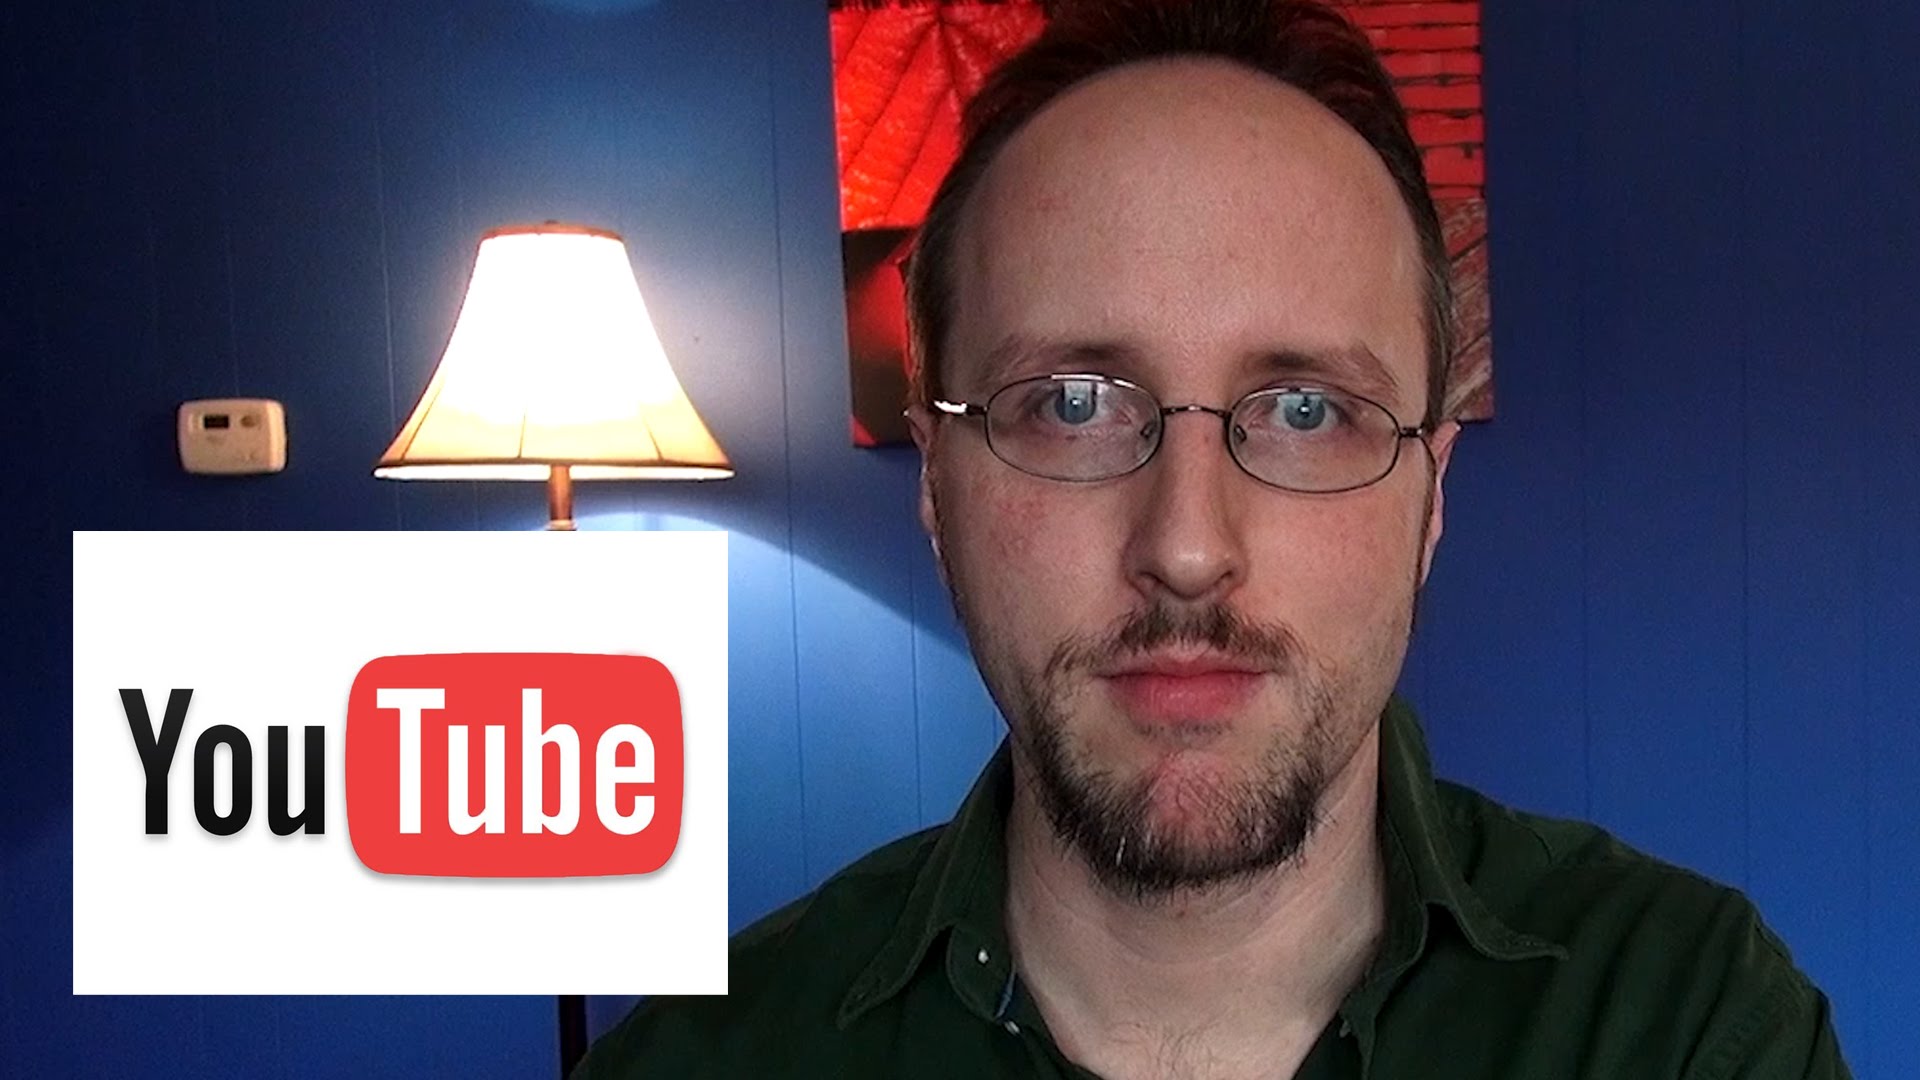 Cơn giận dữ của nhà sản xuất nội dung với mạng video YouTube